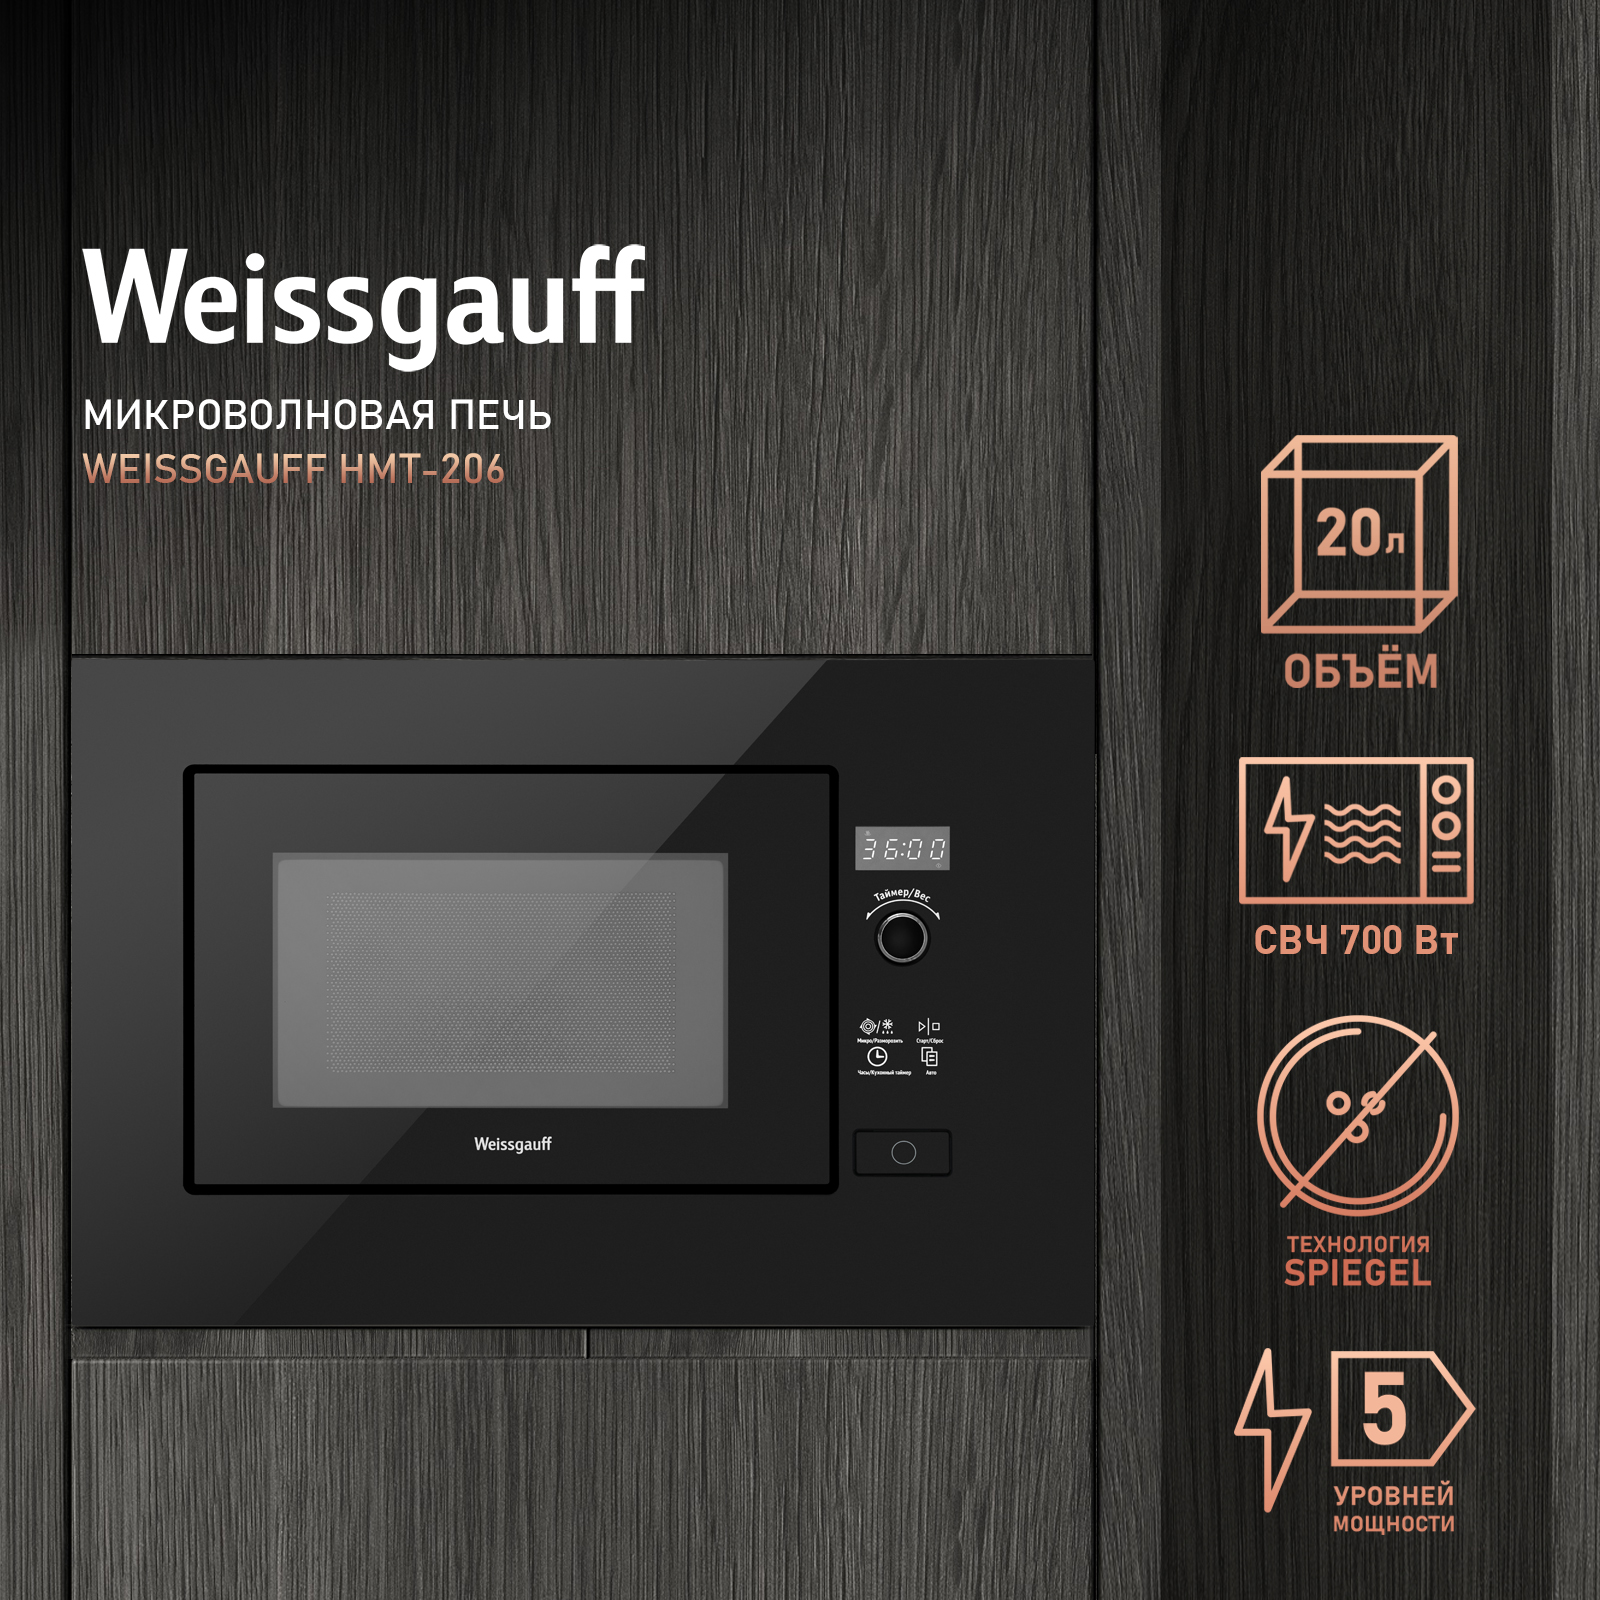 Встраиваемая микроволновая печь Weissgauff HMT-206 Black встраиваемая микроволновая печь weissgauff hmt 720 bx grill